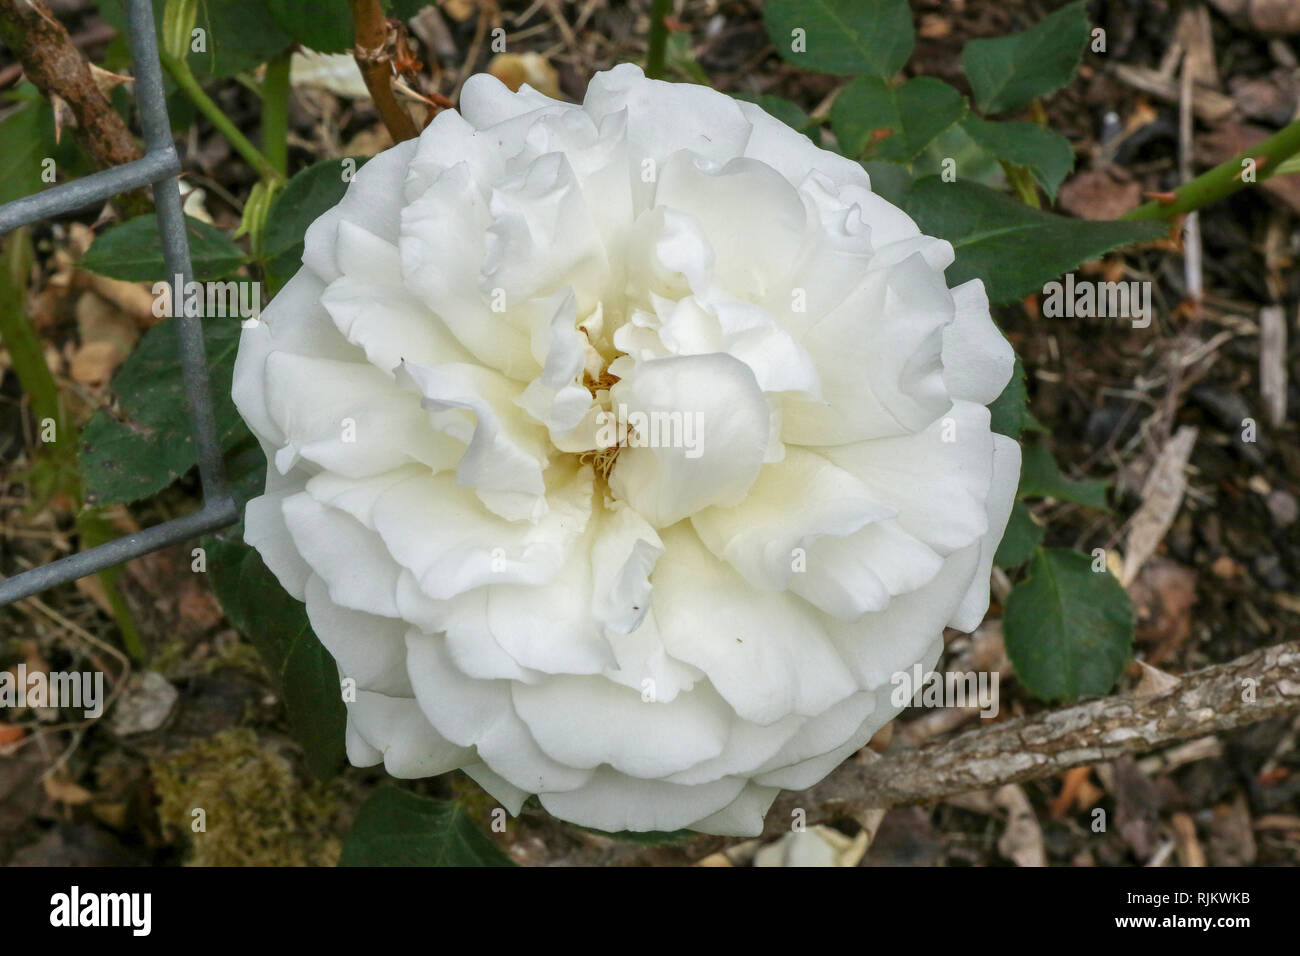 Crème de la Crème a creamy white climbing rose in bloom in 2018, Stock Photo